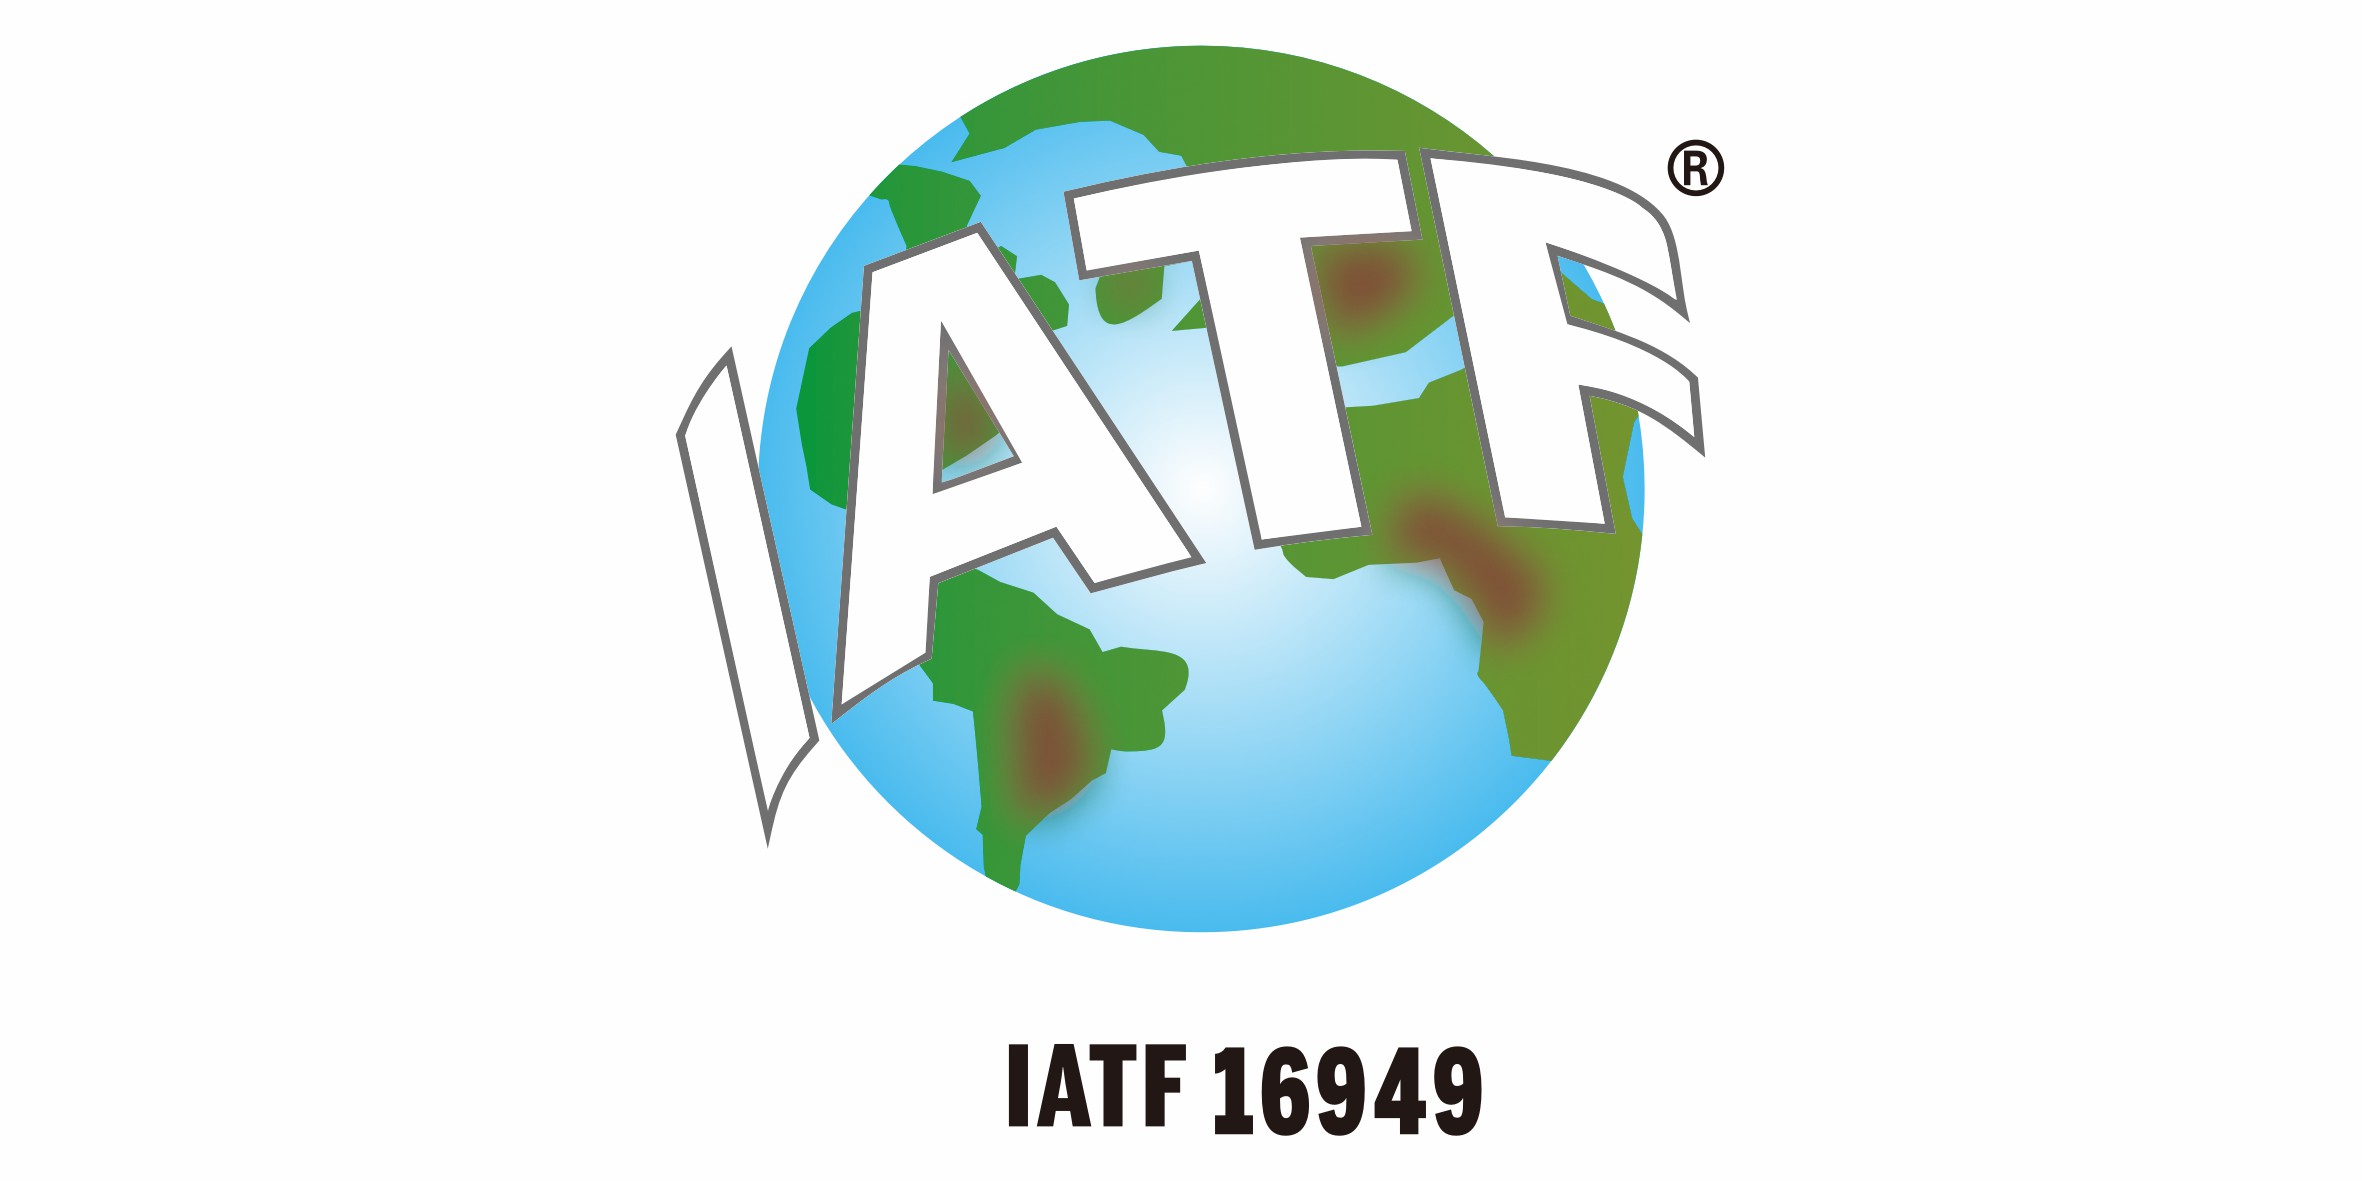 IATF 16949:2016